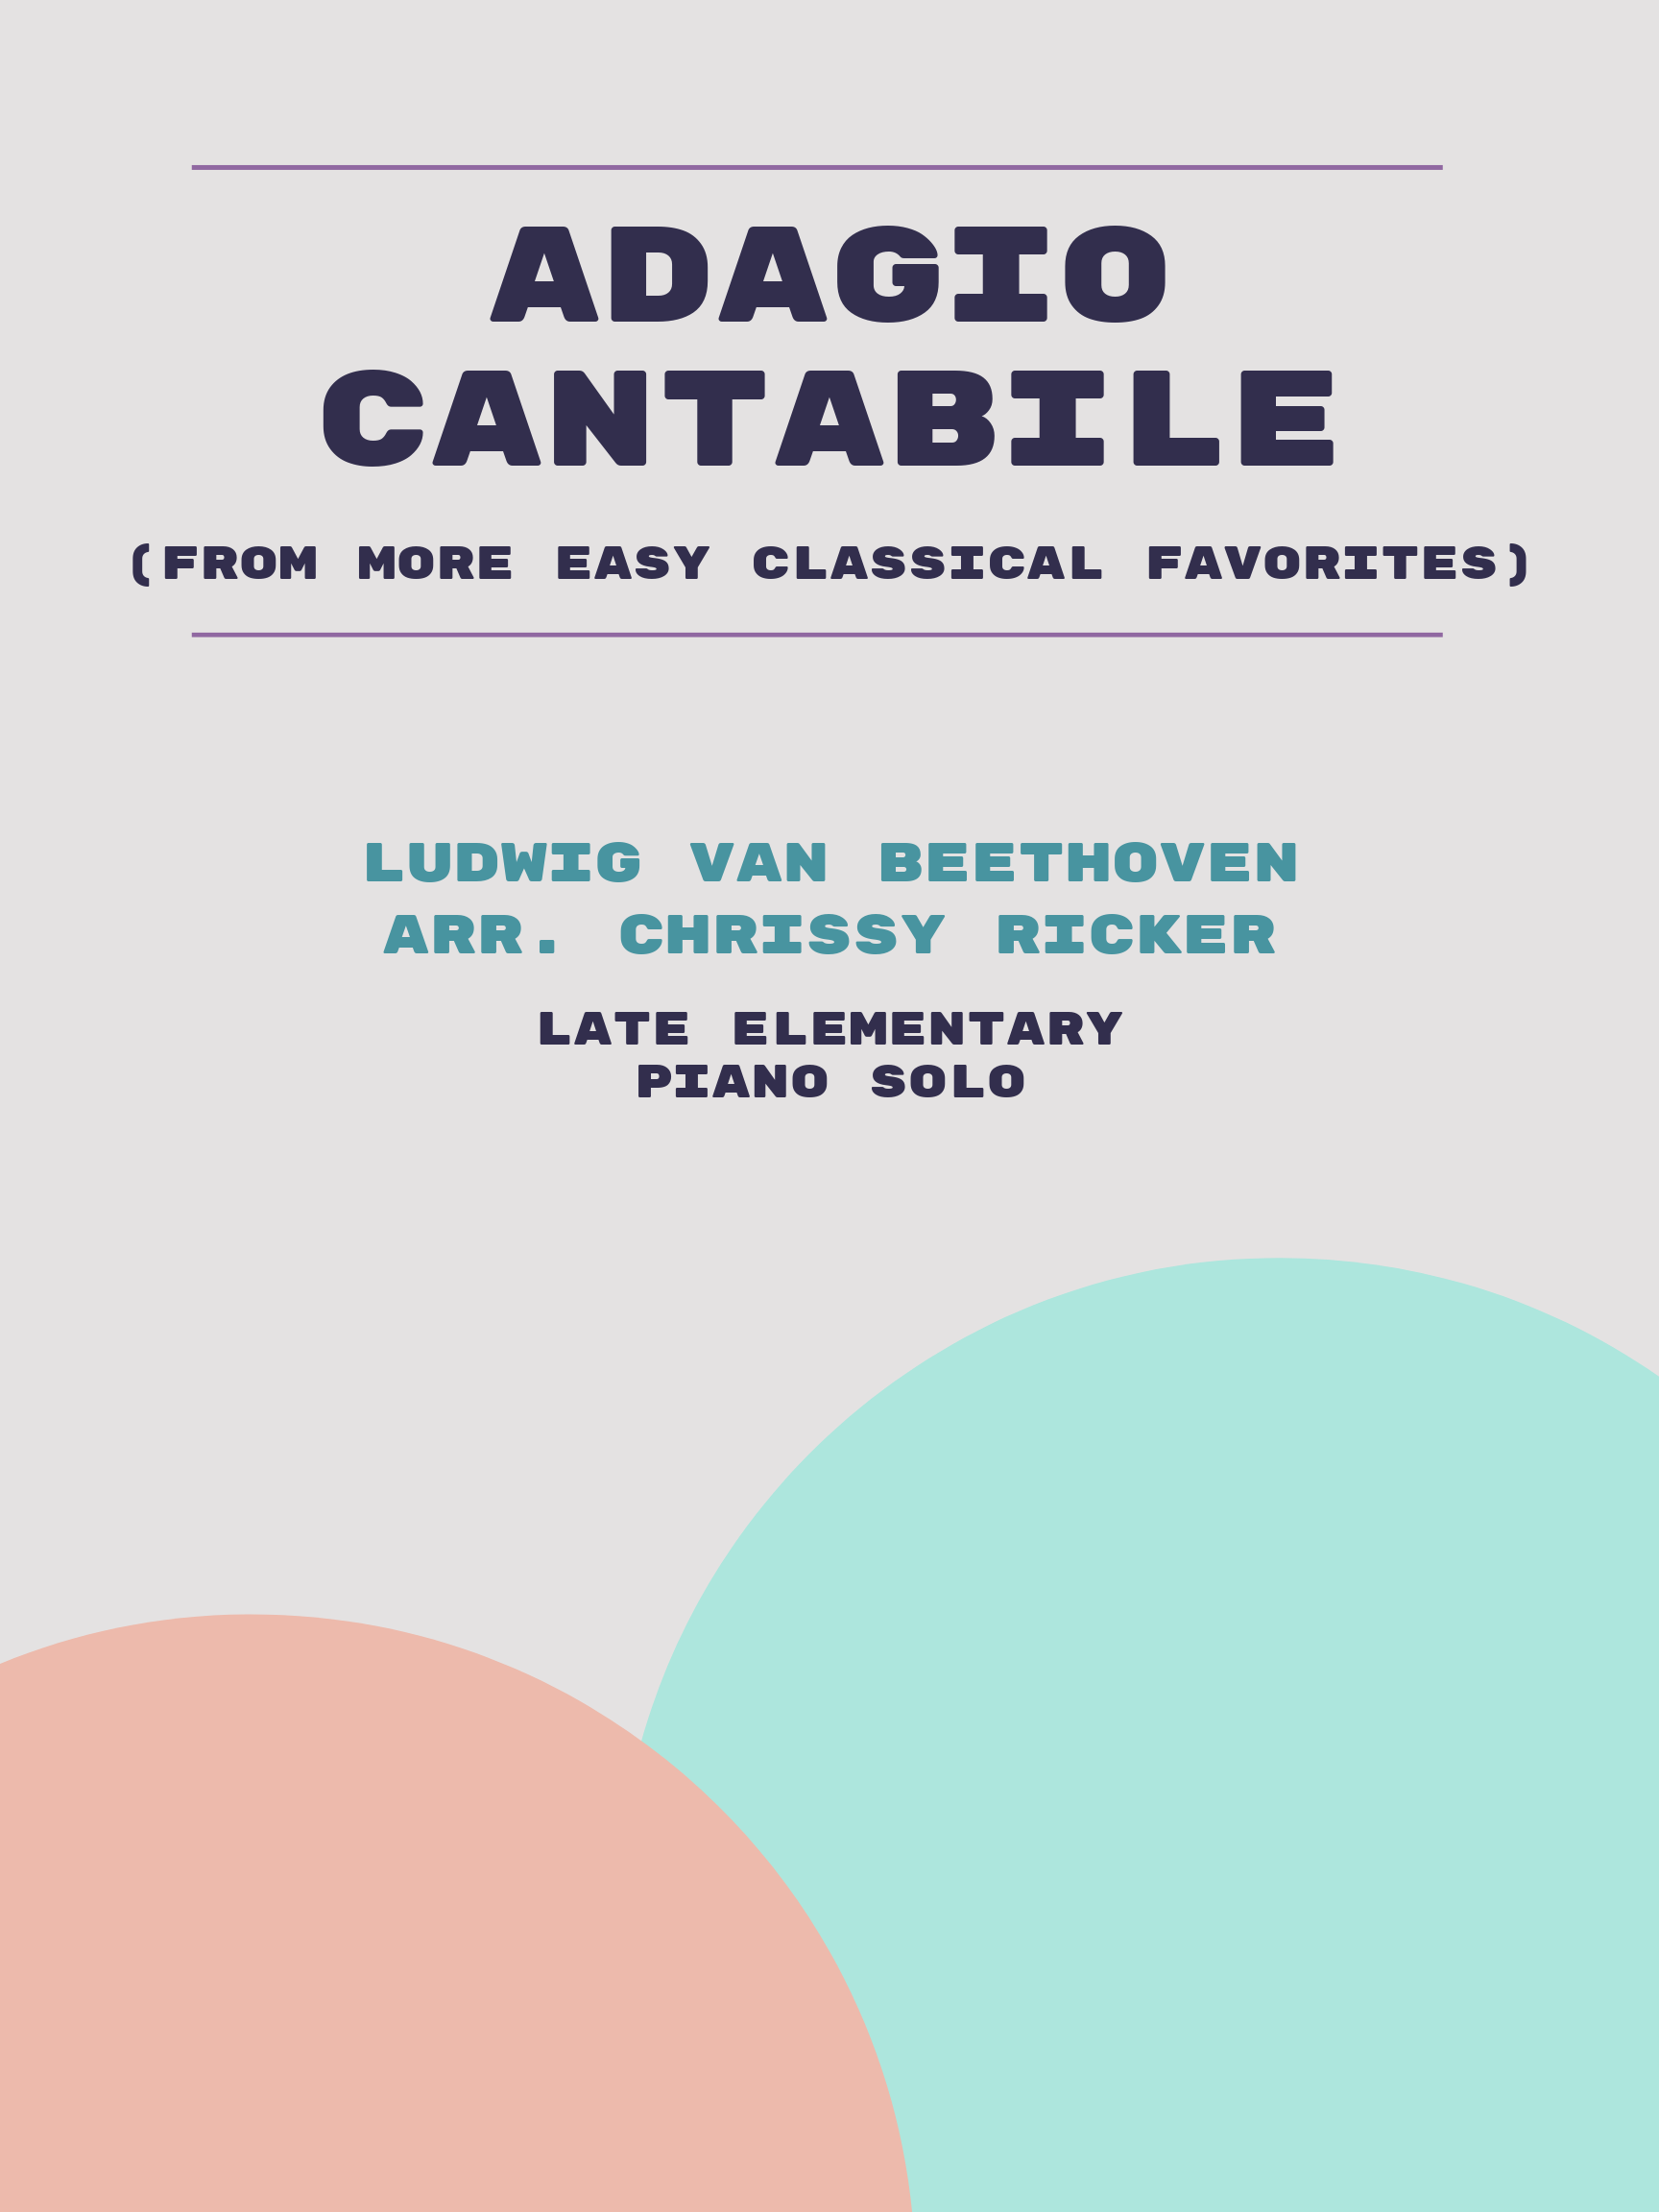 Adagio Cantabile Sample Page